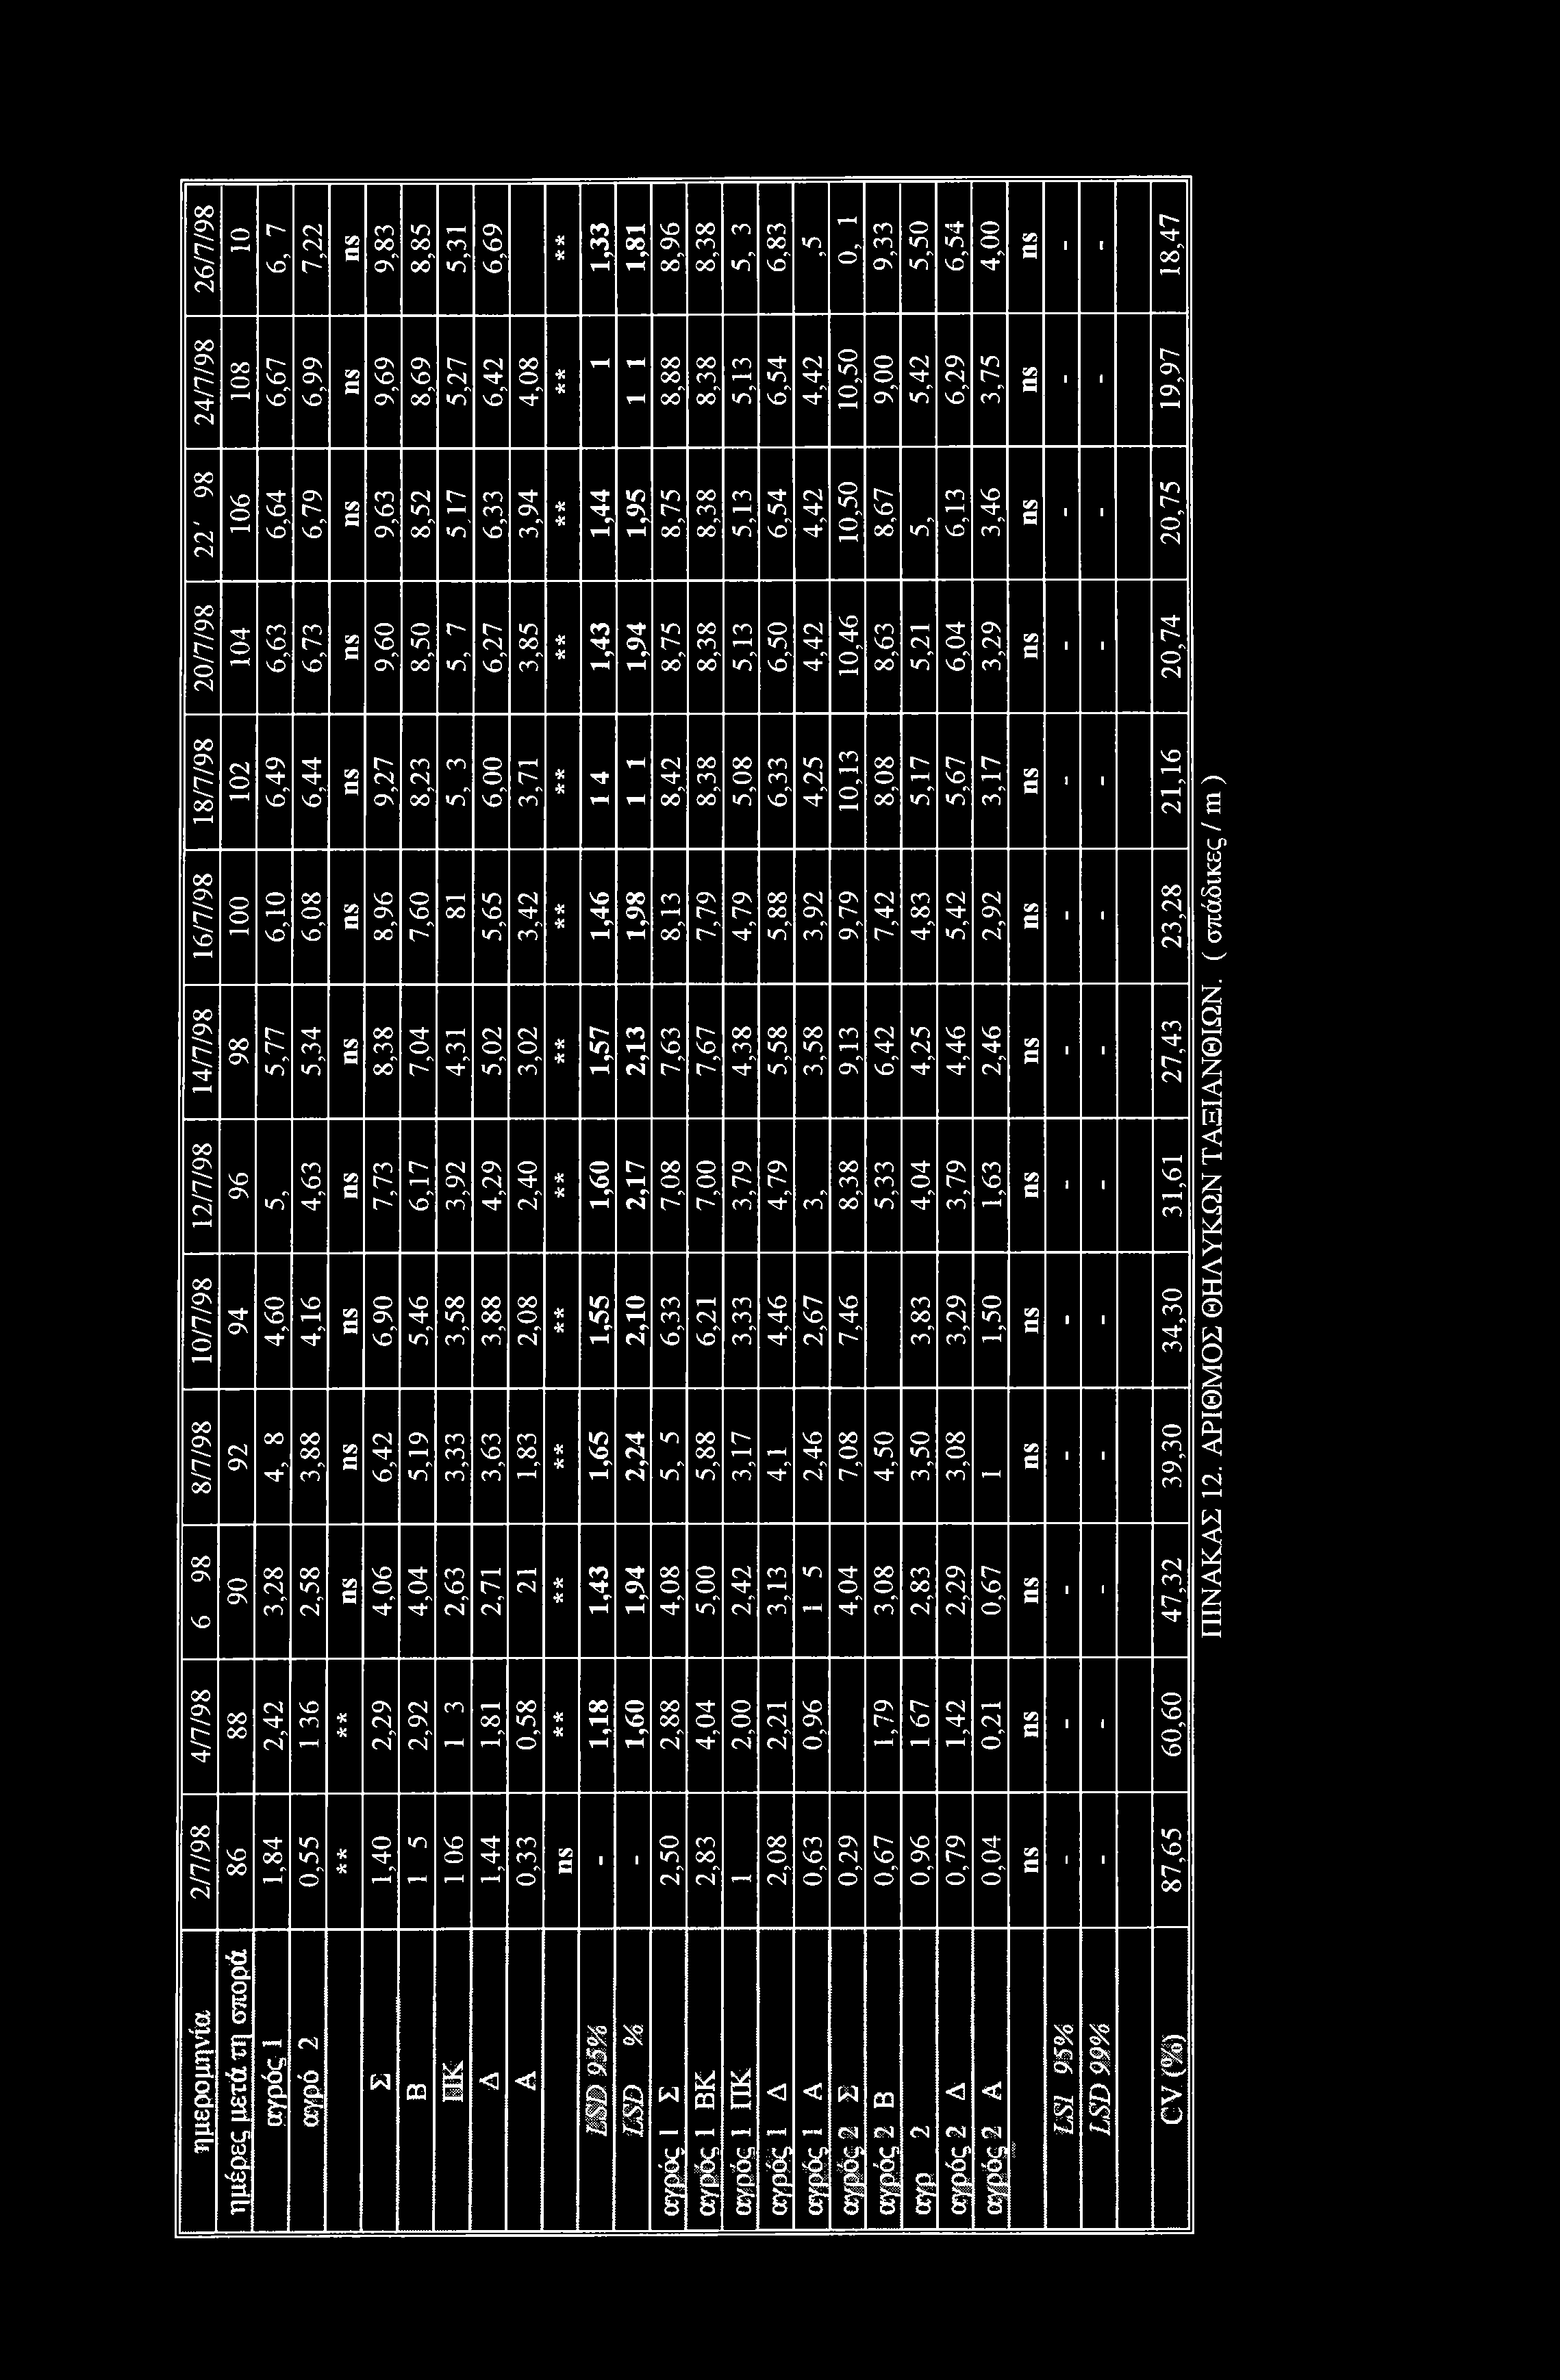 26/7/98 Γ" no" 7,22 9,83 8,85 rn in" 6,69 X,33 X 8 NO Νλ oo" 8,38 <n" ^ no" <n^ rh o" On" o «n in" "it ηλ no" 4, 8,47 24/7/98 ο rh 6,67 6,99 9,69 8,69 5,27 6,42 4,08 X rh rh rh 8,88 8,38 5,3 6,54